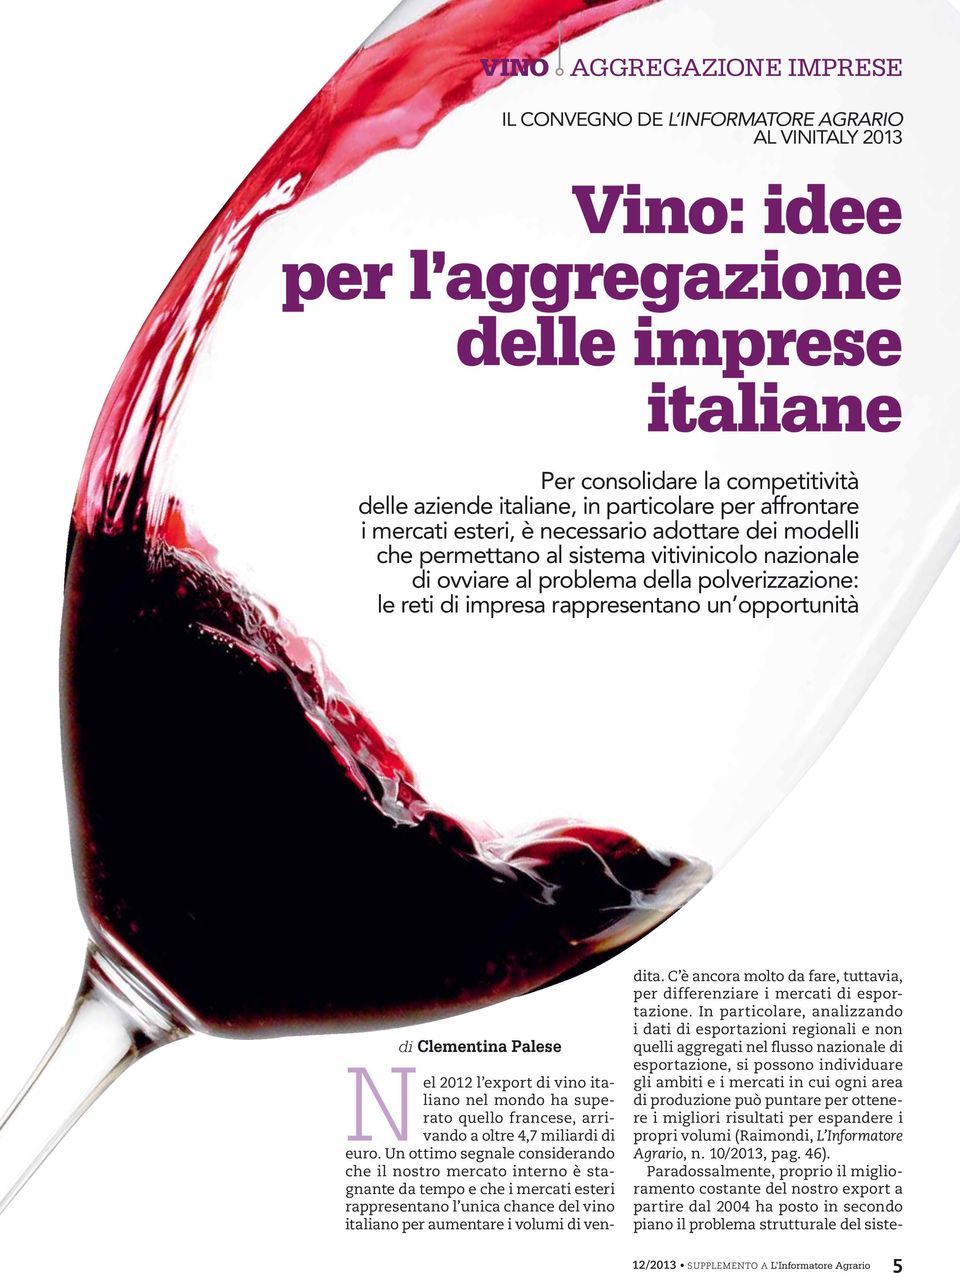 Clementina Palese Nel 2012 l export di vino italiano nel mondo ha superato quello francese, arrivando a oltre 4,7 miliardi di euro.